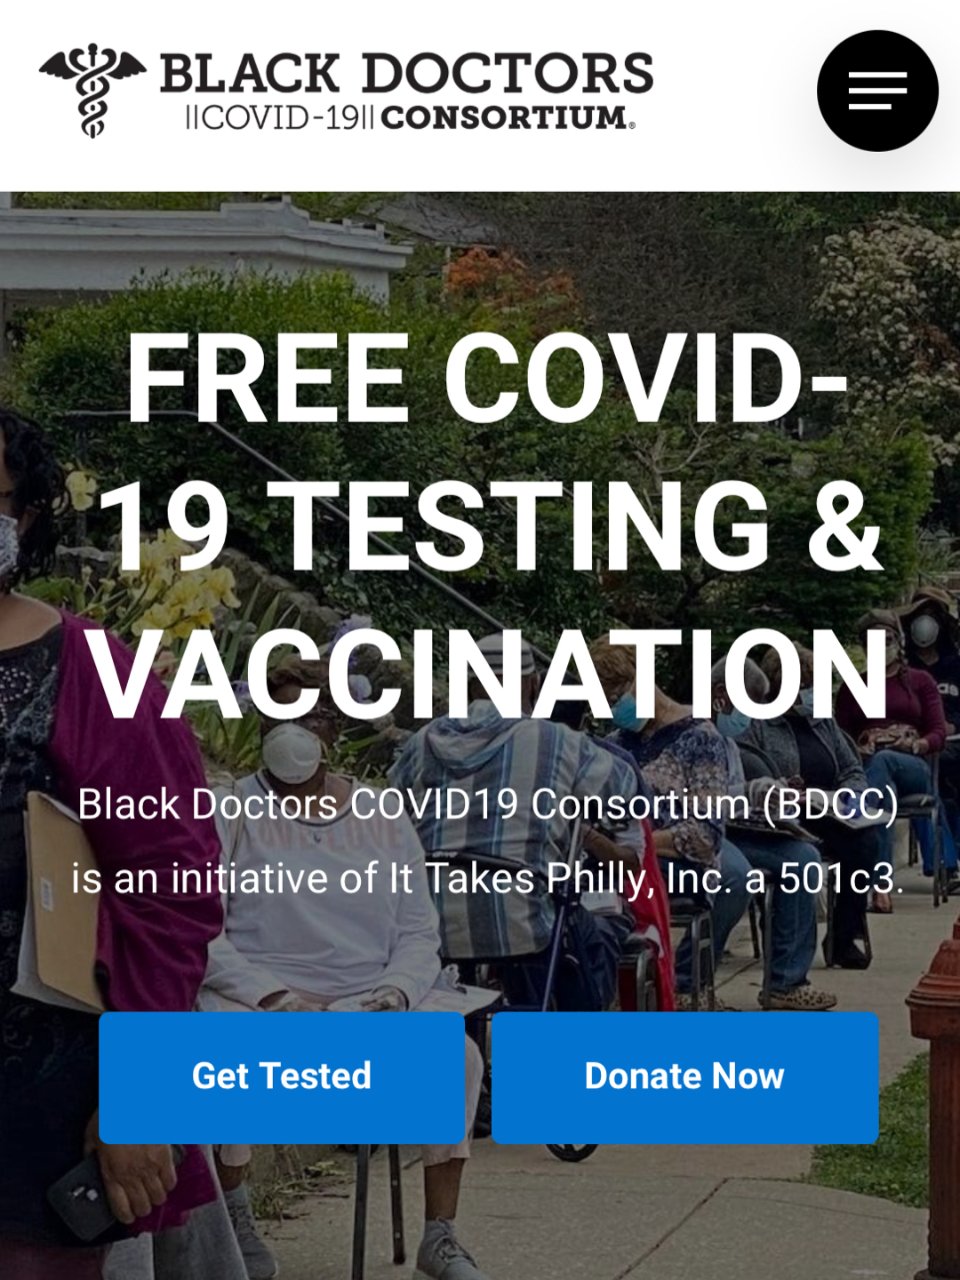 Black Doctors COVID-19 Consortium